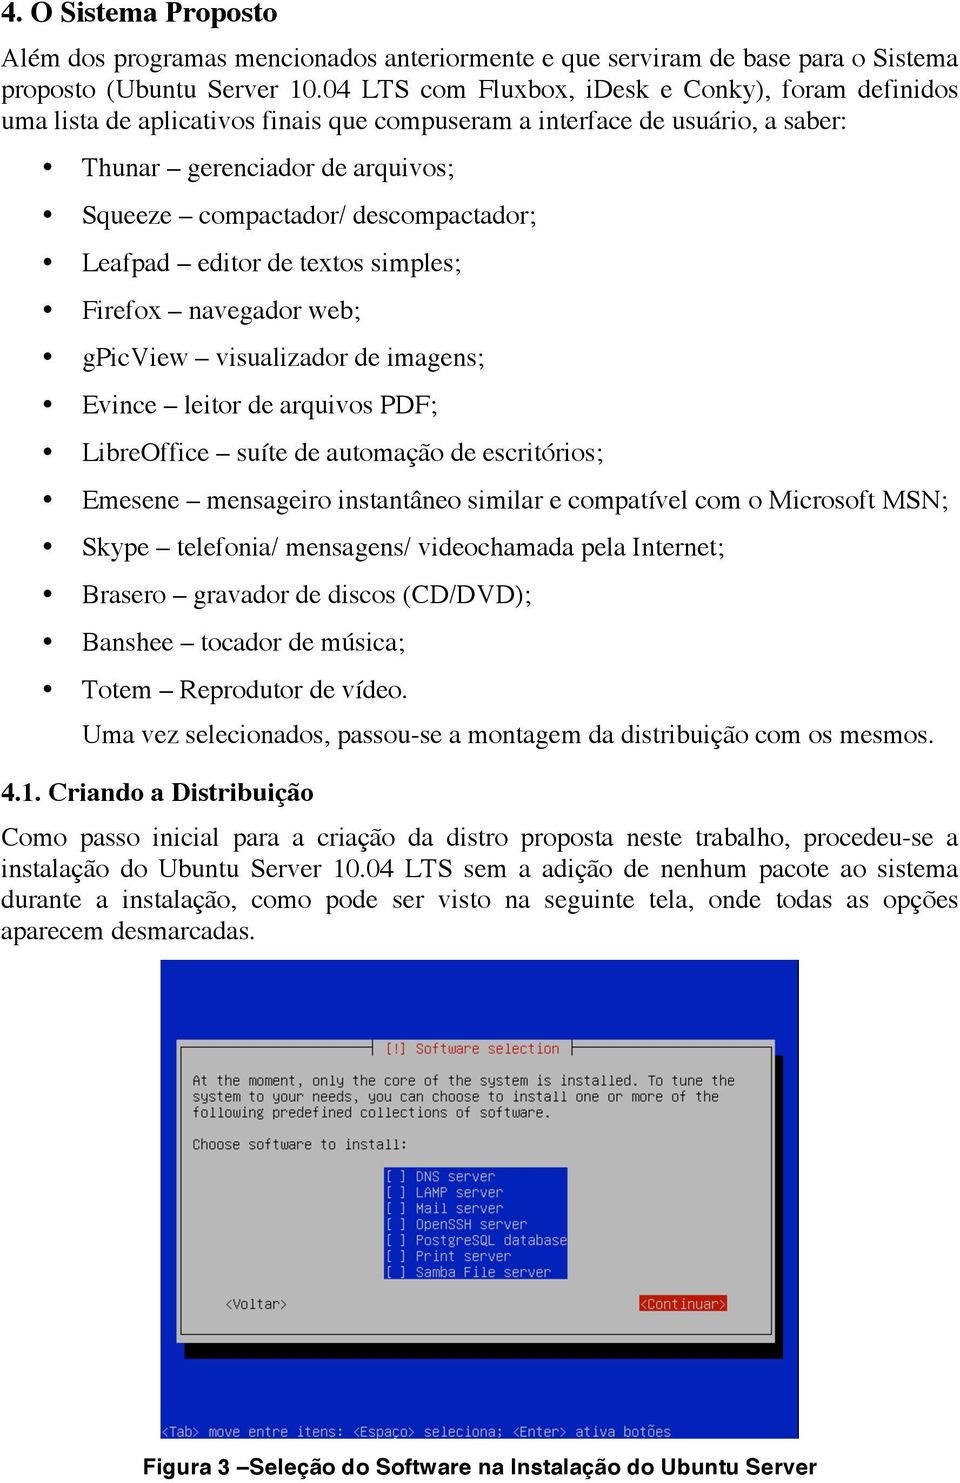 descompactador; Leafpad editor de textos simples; Firefox navegador web; gpicview visualizador de imagens; Evince leitor de arquivos PDF; LibreOffice suíte de automação de escritórios; Emesene